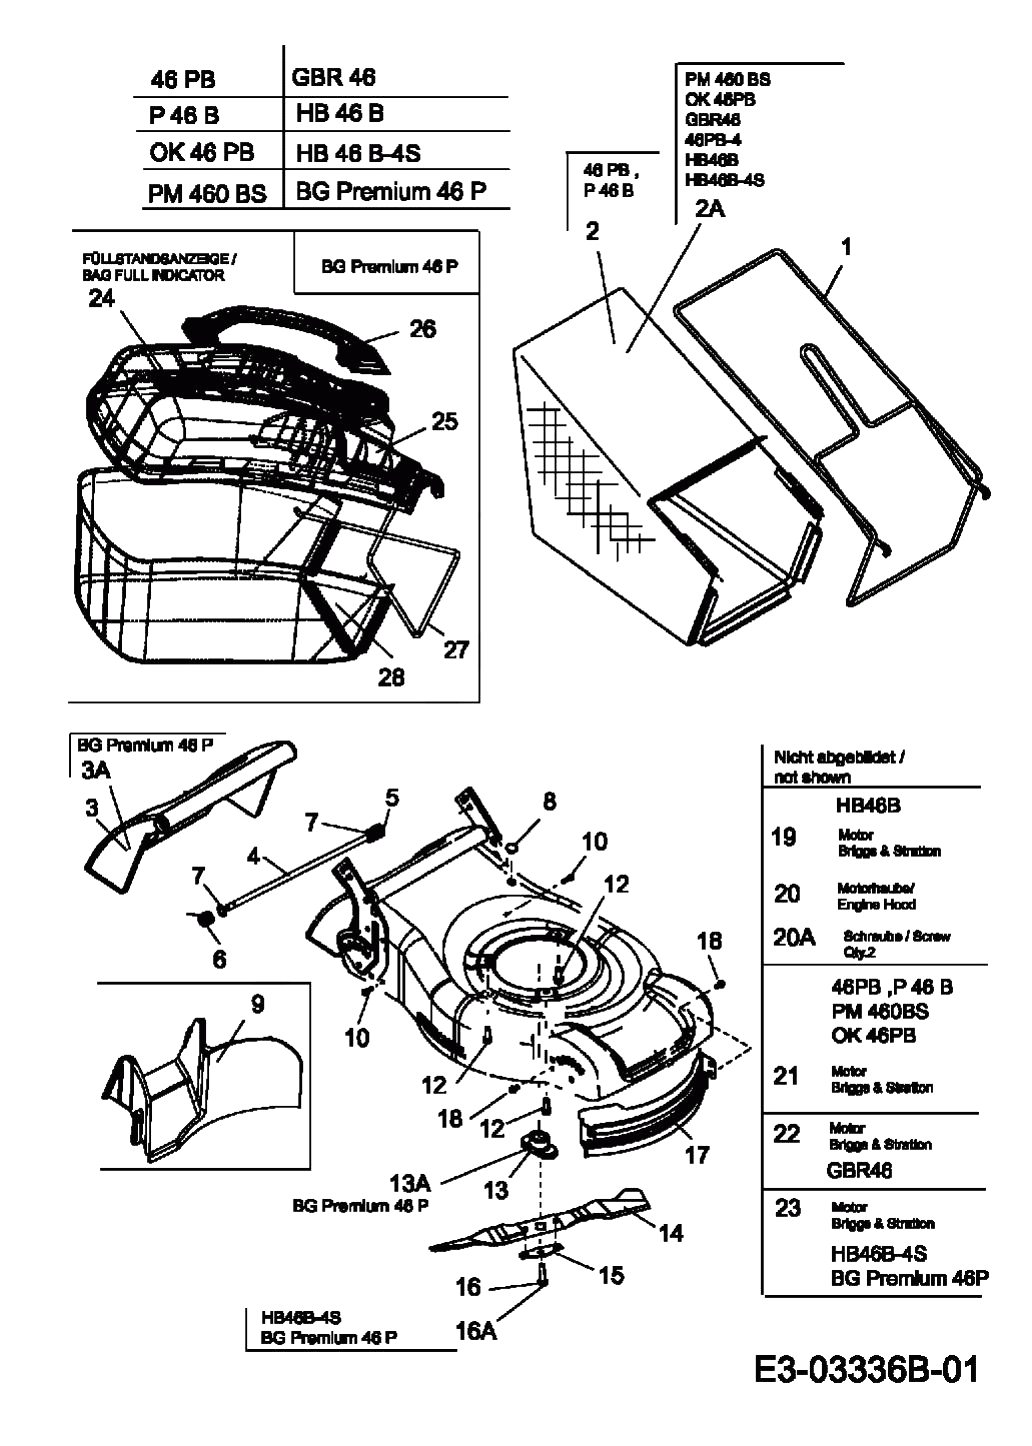 MTD Артикул 11C-J10G615 (год выпуска 2008). Травосборник, ножи, двигатель